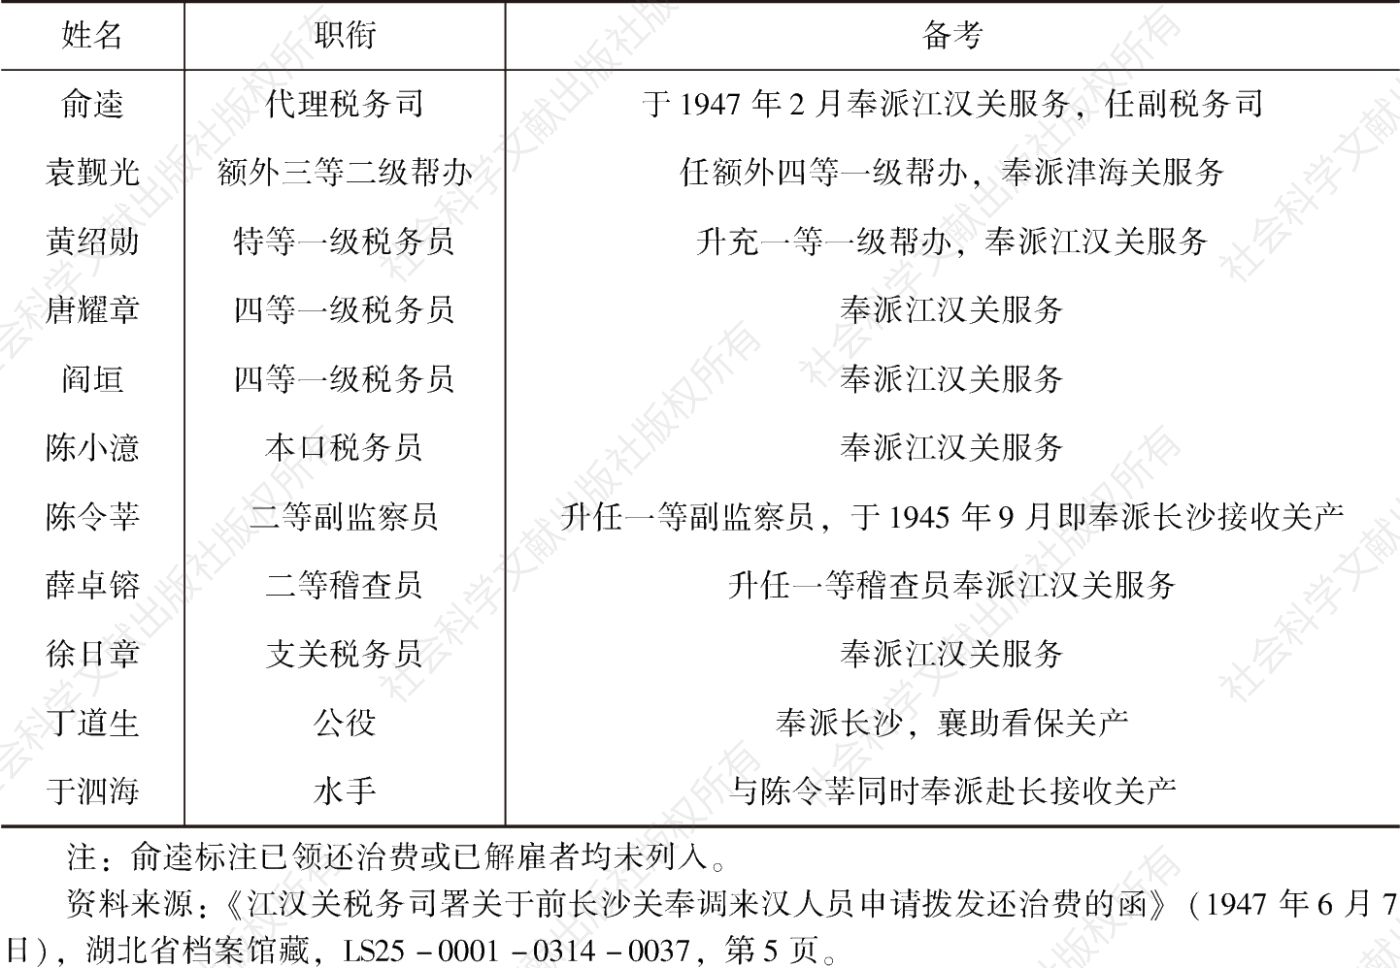 表1 长沙关1945年9月时员工名册